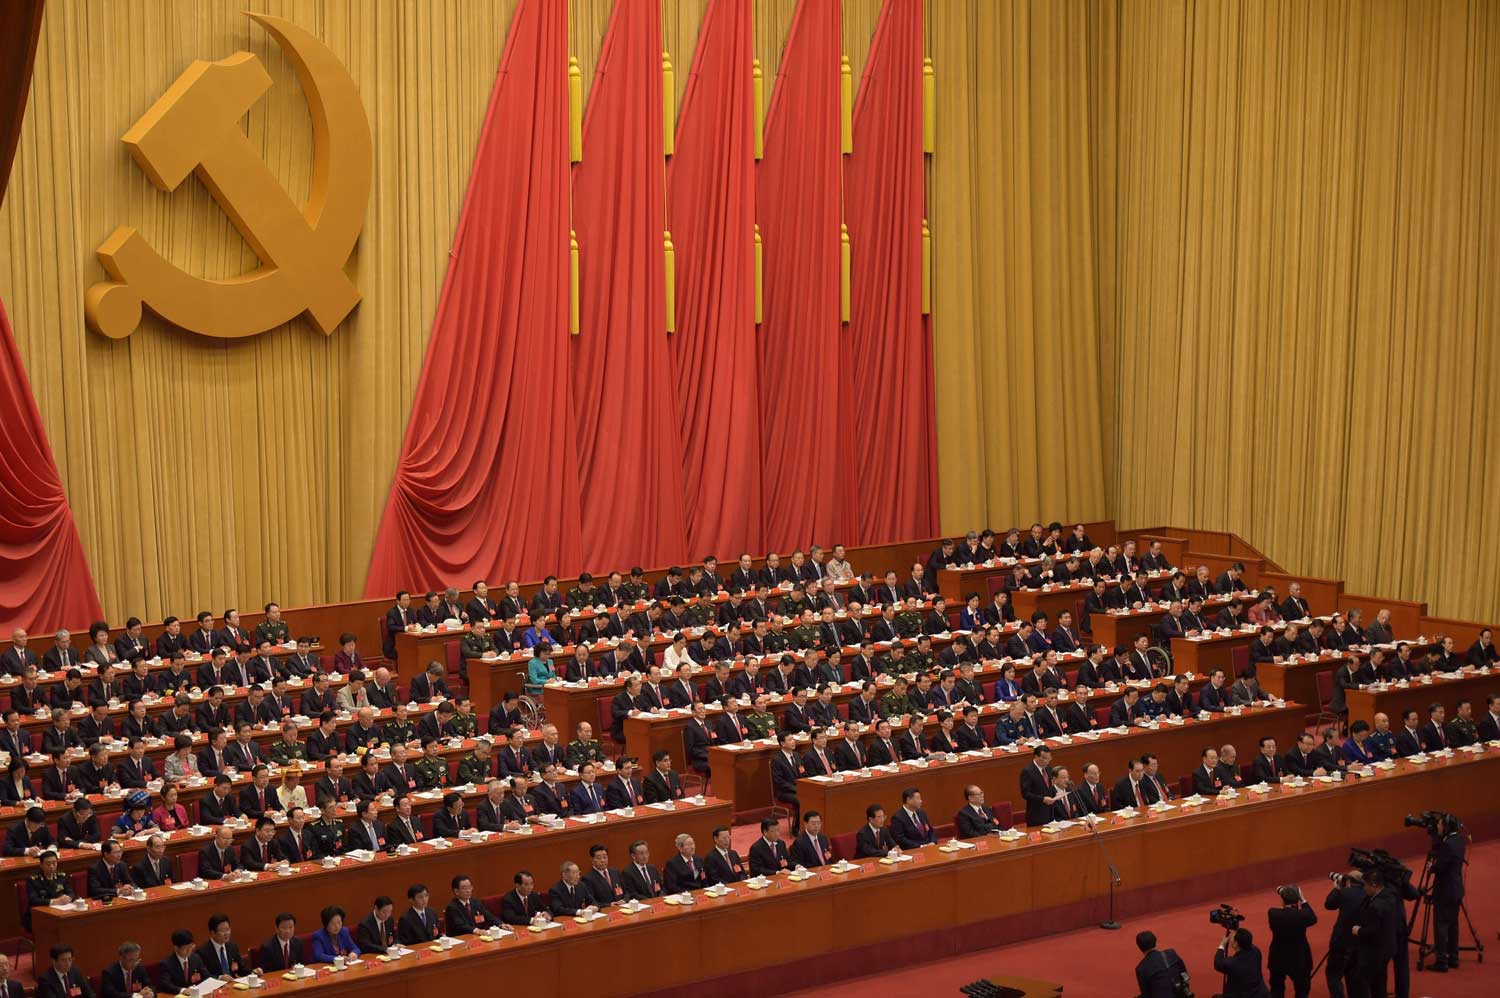 Kiinan kommunistisen puolueen 19. puoluekokous keräsi 2 280 puolueen riveistä valittua edustajaa maan tärkeimpään poliittiseen tapahtumaan. Kuva: Lehtikuva / AFP